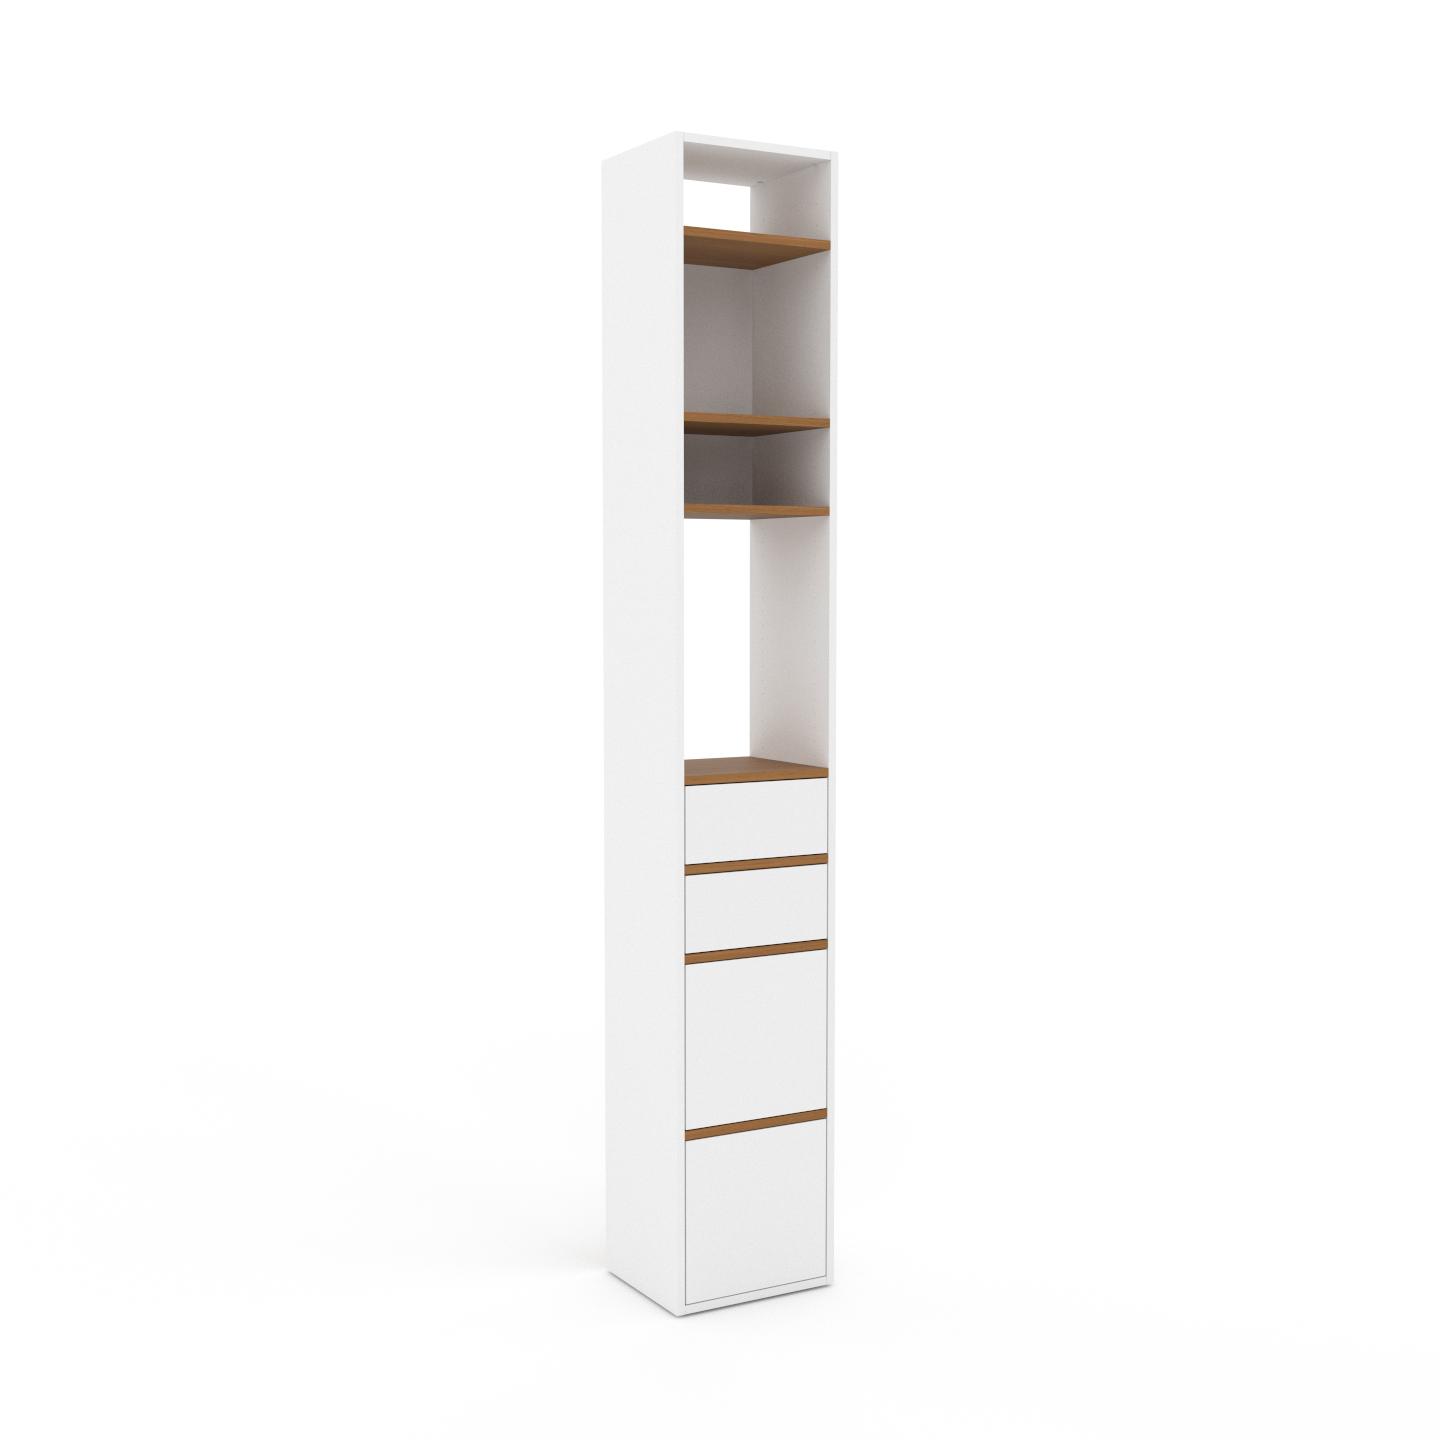 MYCS Aktenschrank Weiß - Büroschrank: Schubladen in Weiß & Türen in Weiß - Hochwertige Materialien - 41 x 253 x 35 cm, Modular